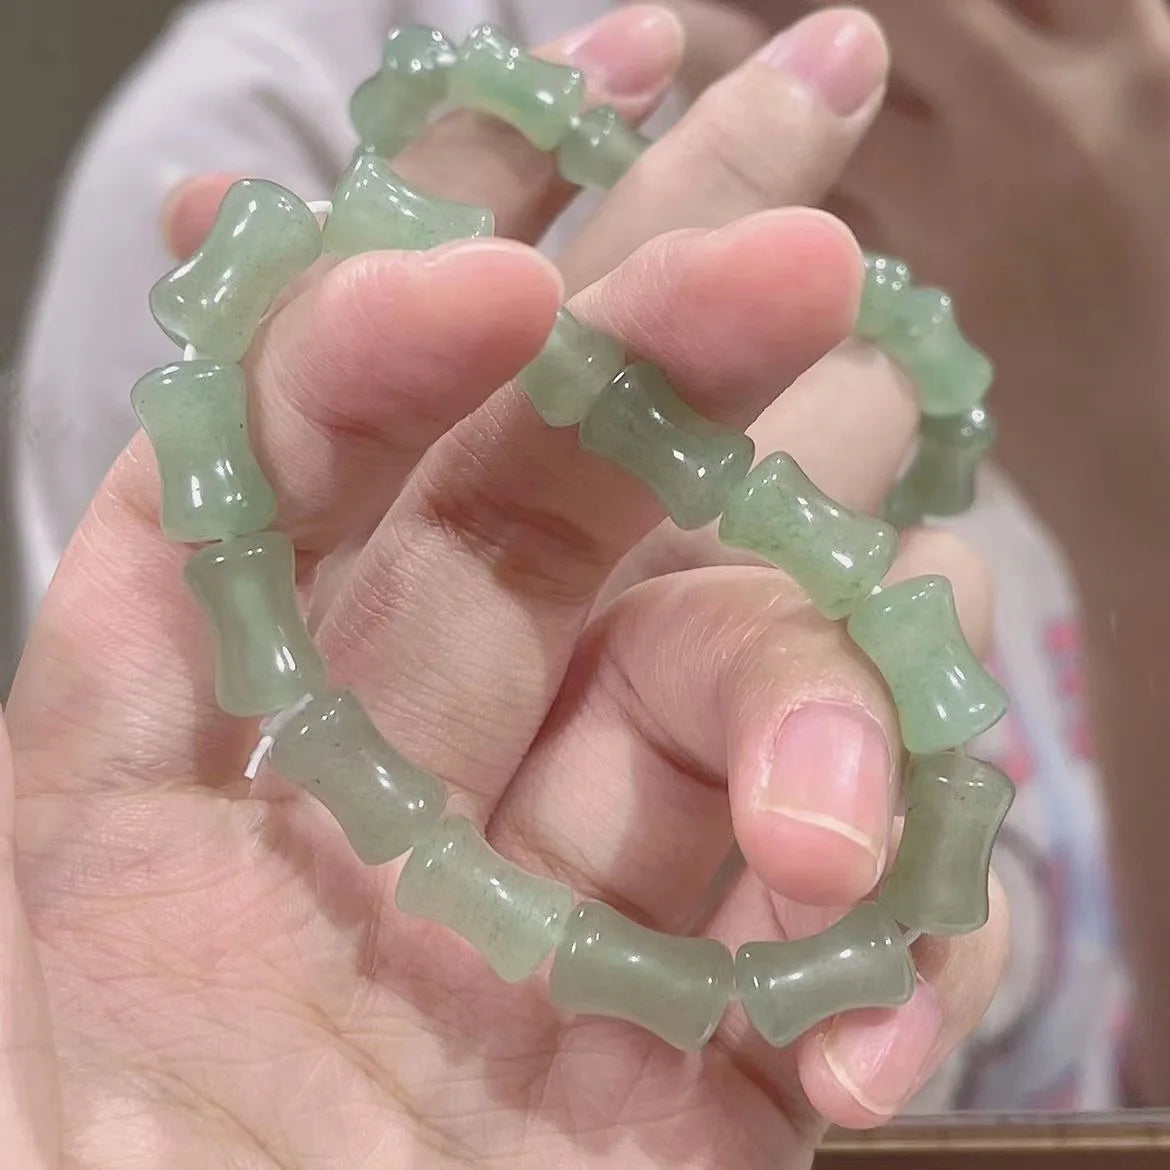 Imitation Hetian Jade Women's Bracelet